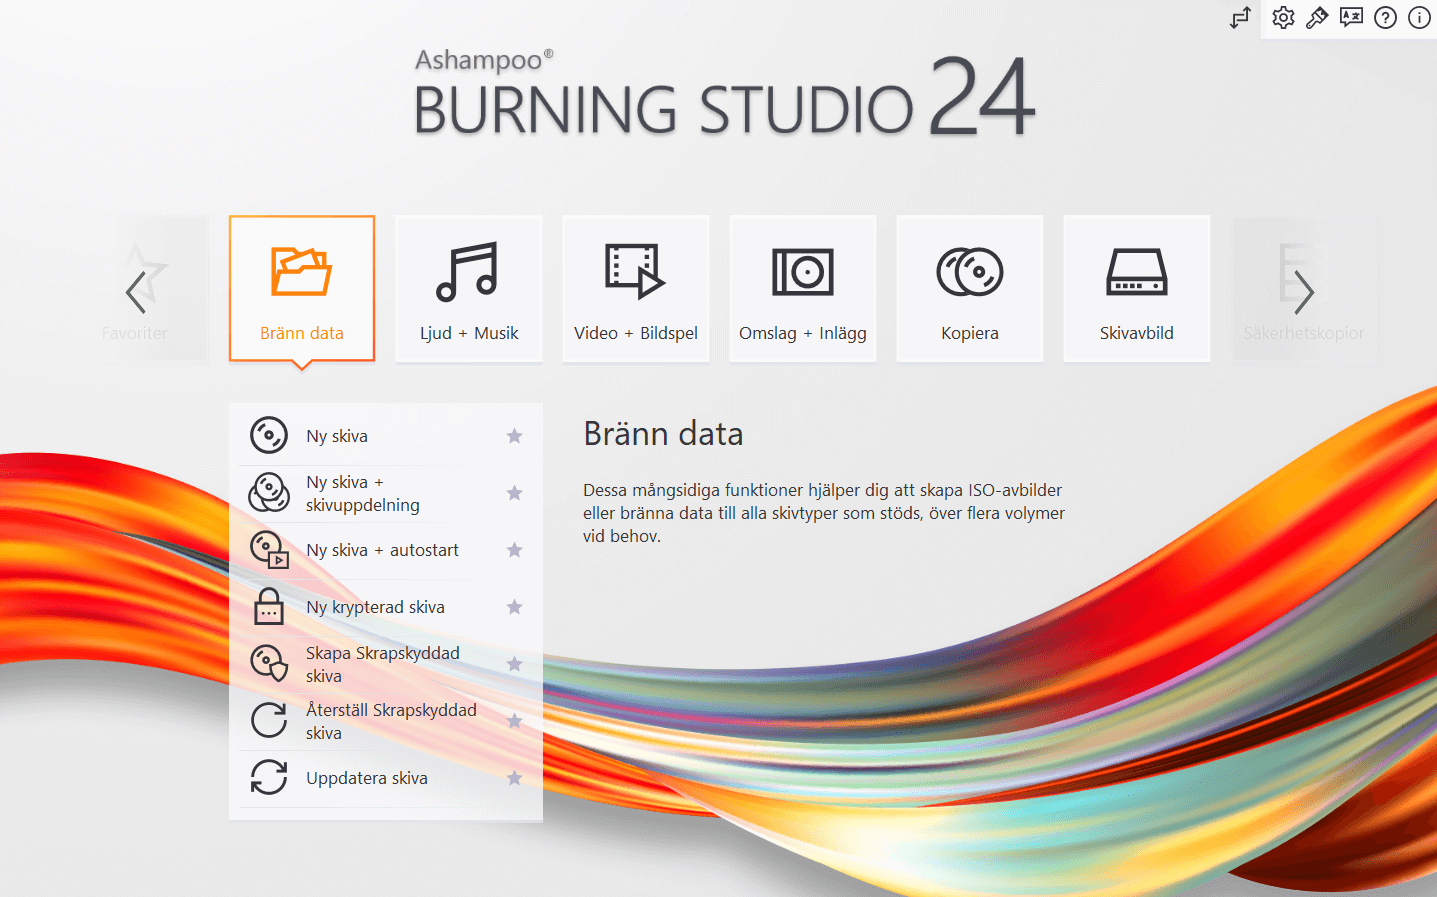 Ashampoo® Burning Studio 24 - Menu 2 light